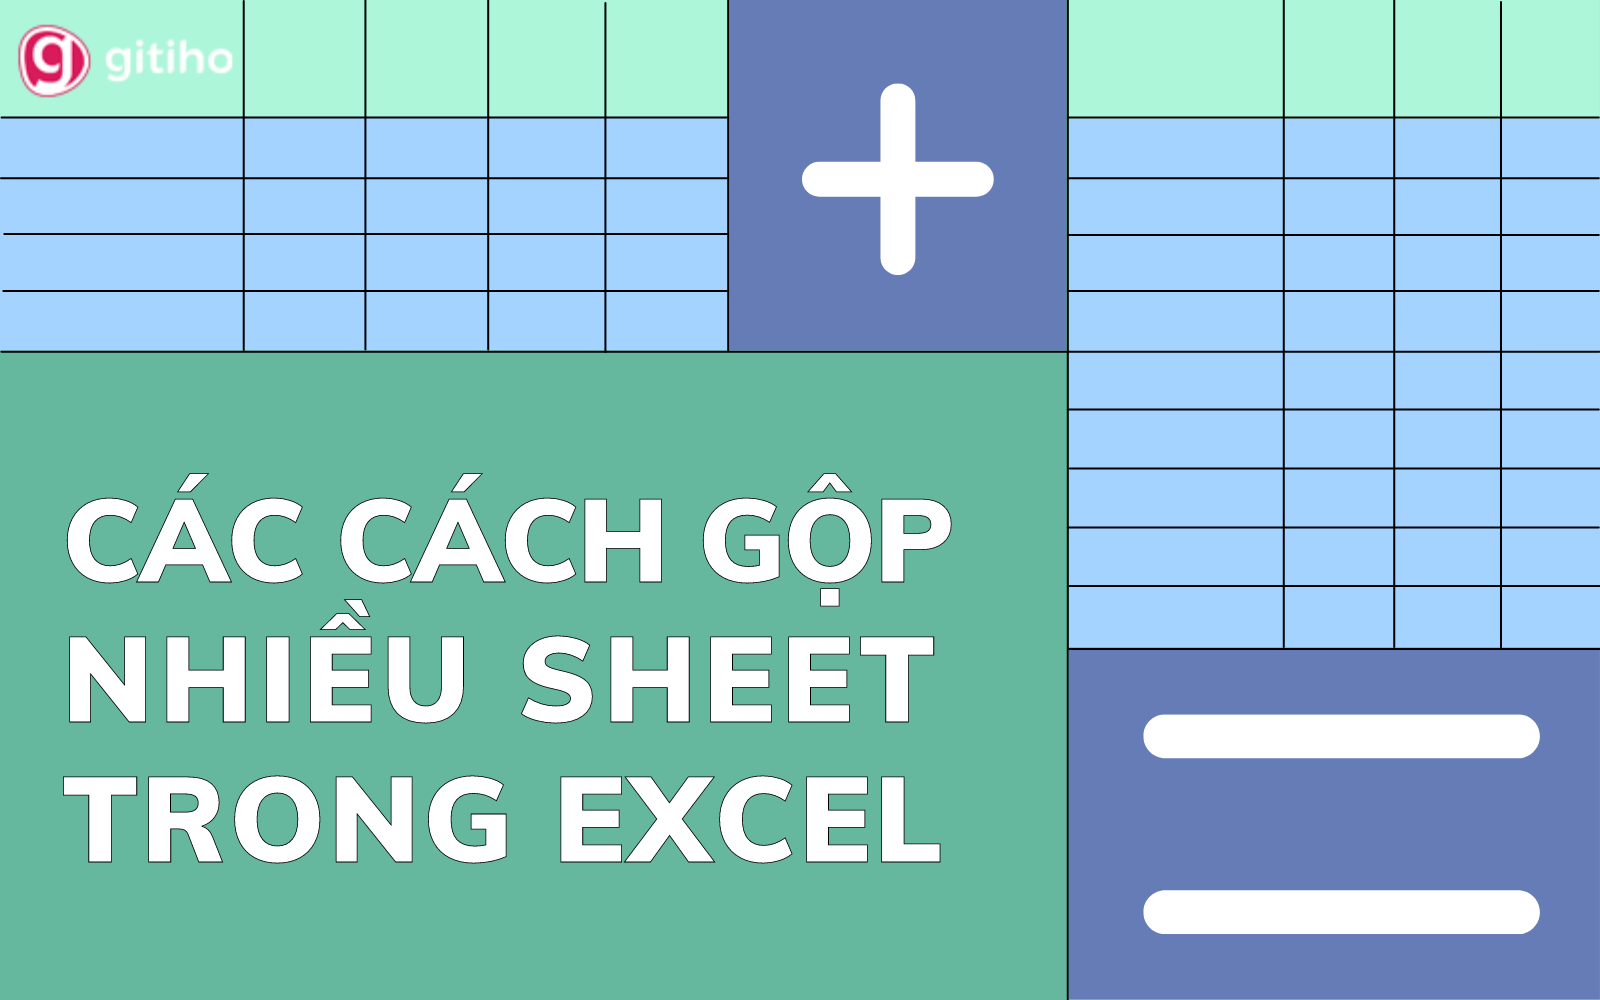 Cách Gộp Nhiều Sheet Thành 1 Sheet Trong Excel 2016 Hướng Dẫn Chi Tiết 6707